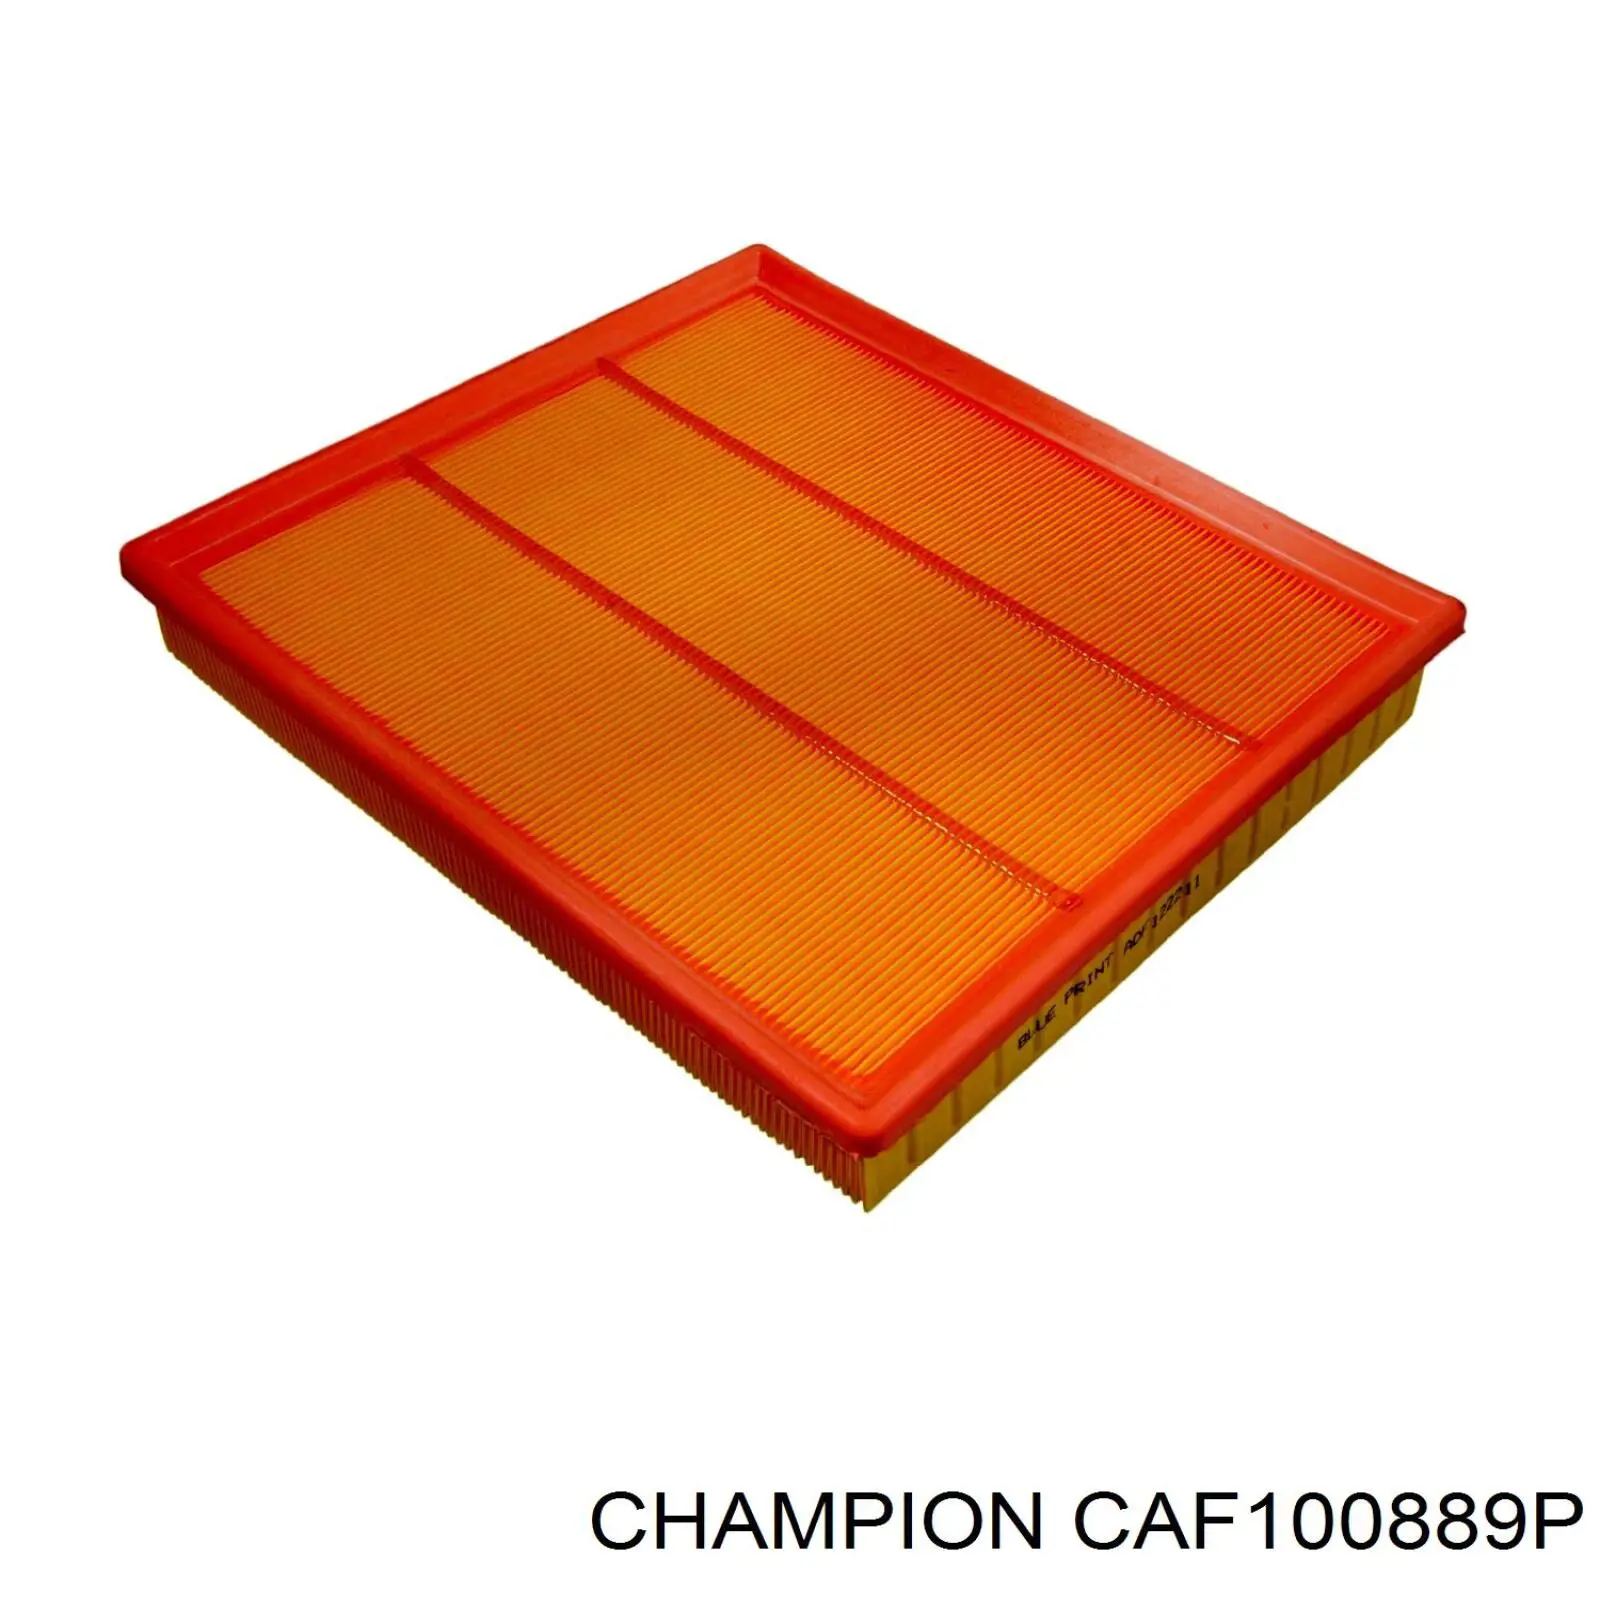 CAF100889P Champion filtro de aire